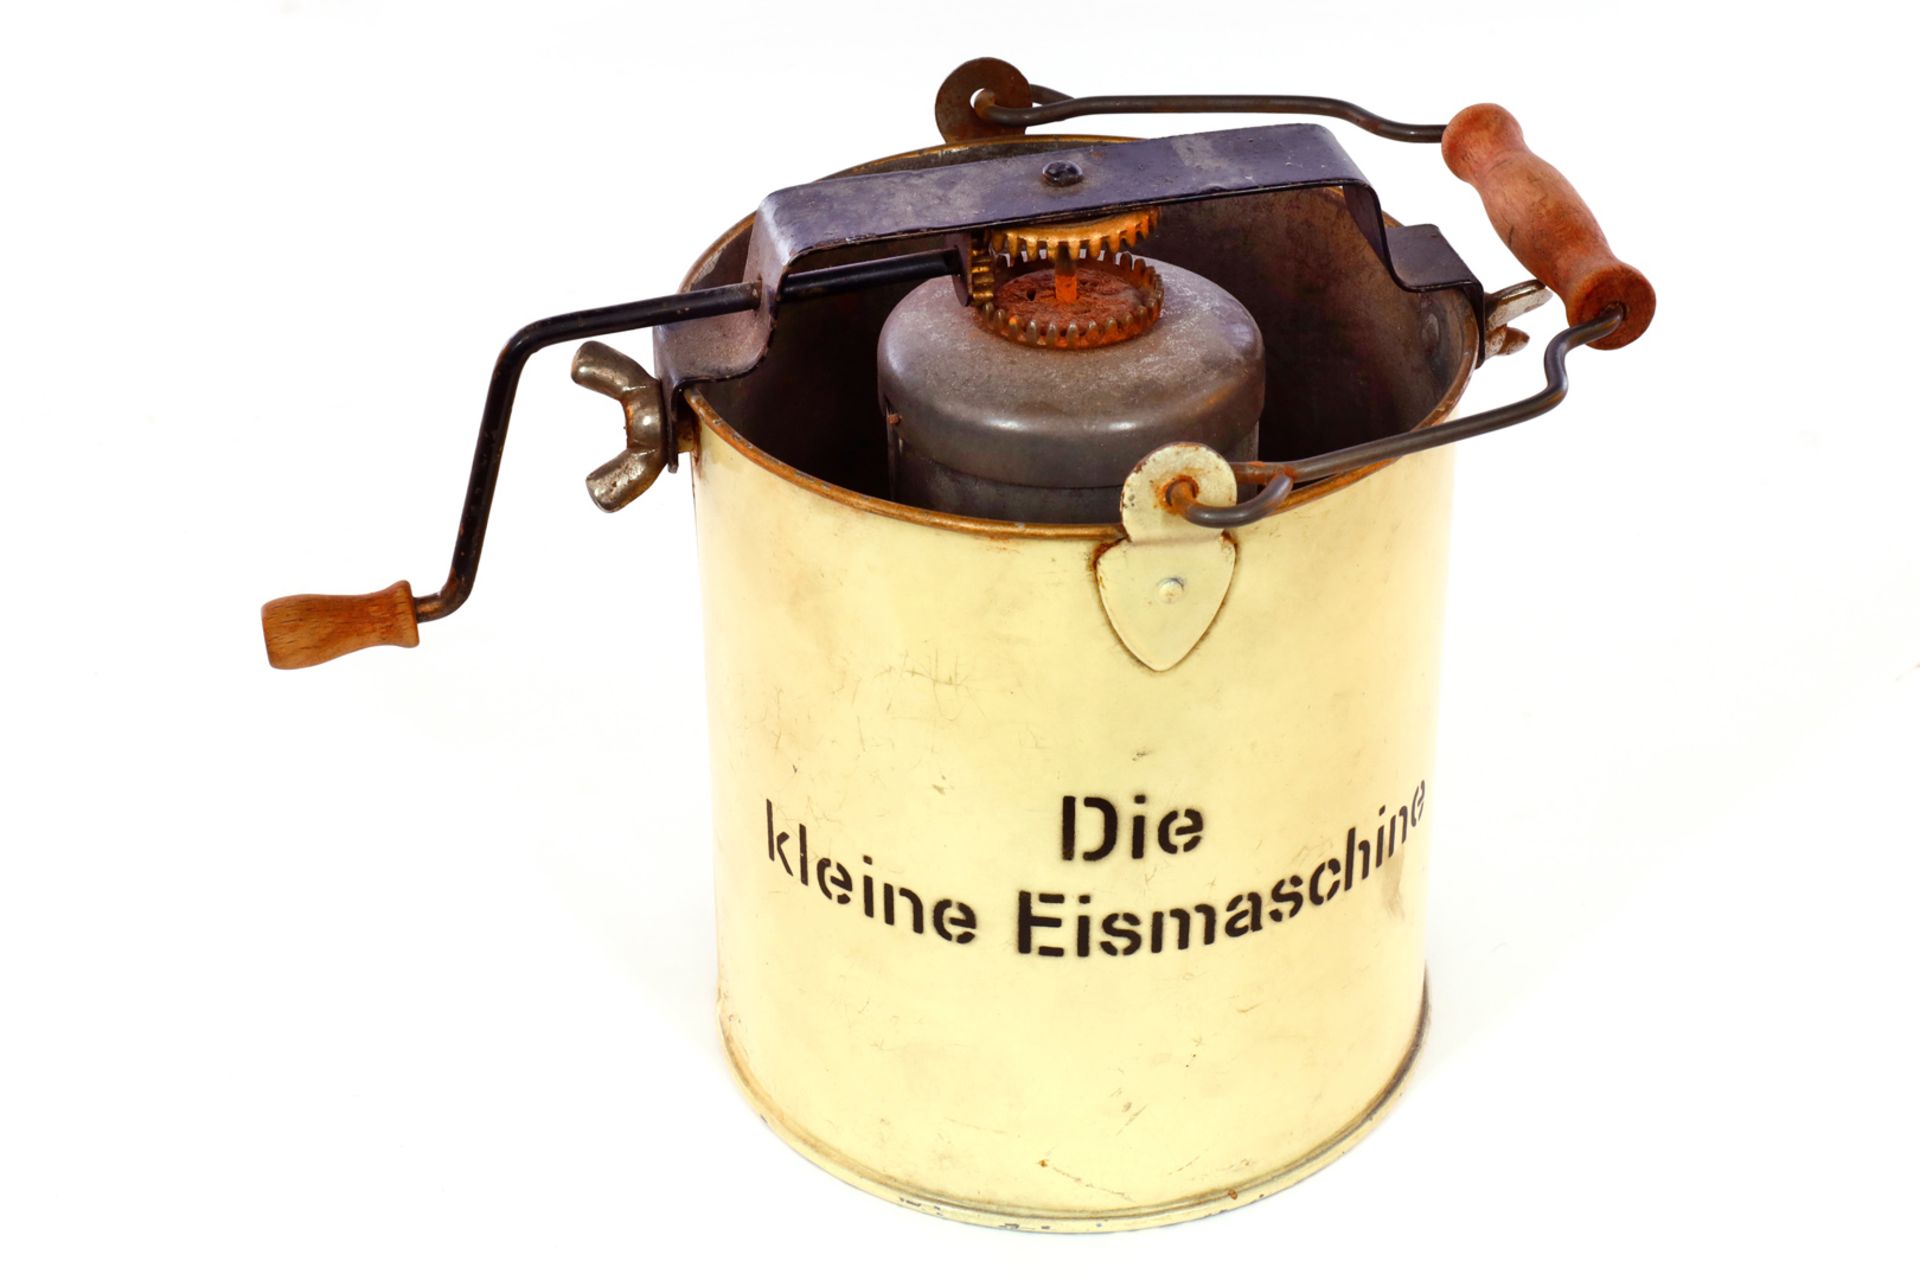 Seltene Blech-Eismaschine, ”Die kleine Eismaschine”, ca. 1910, mit Einsatz und Handkurbel,